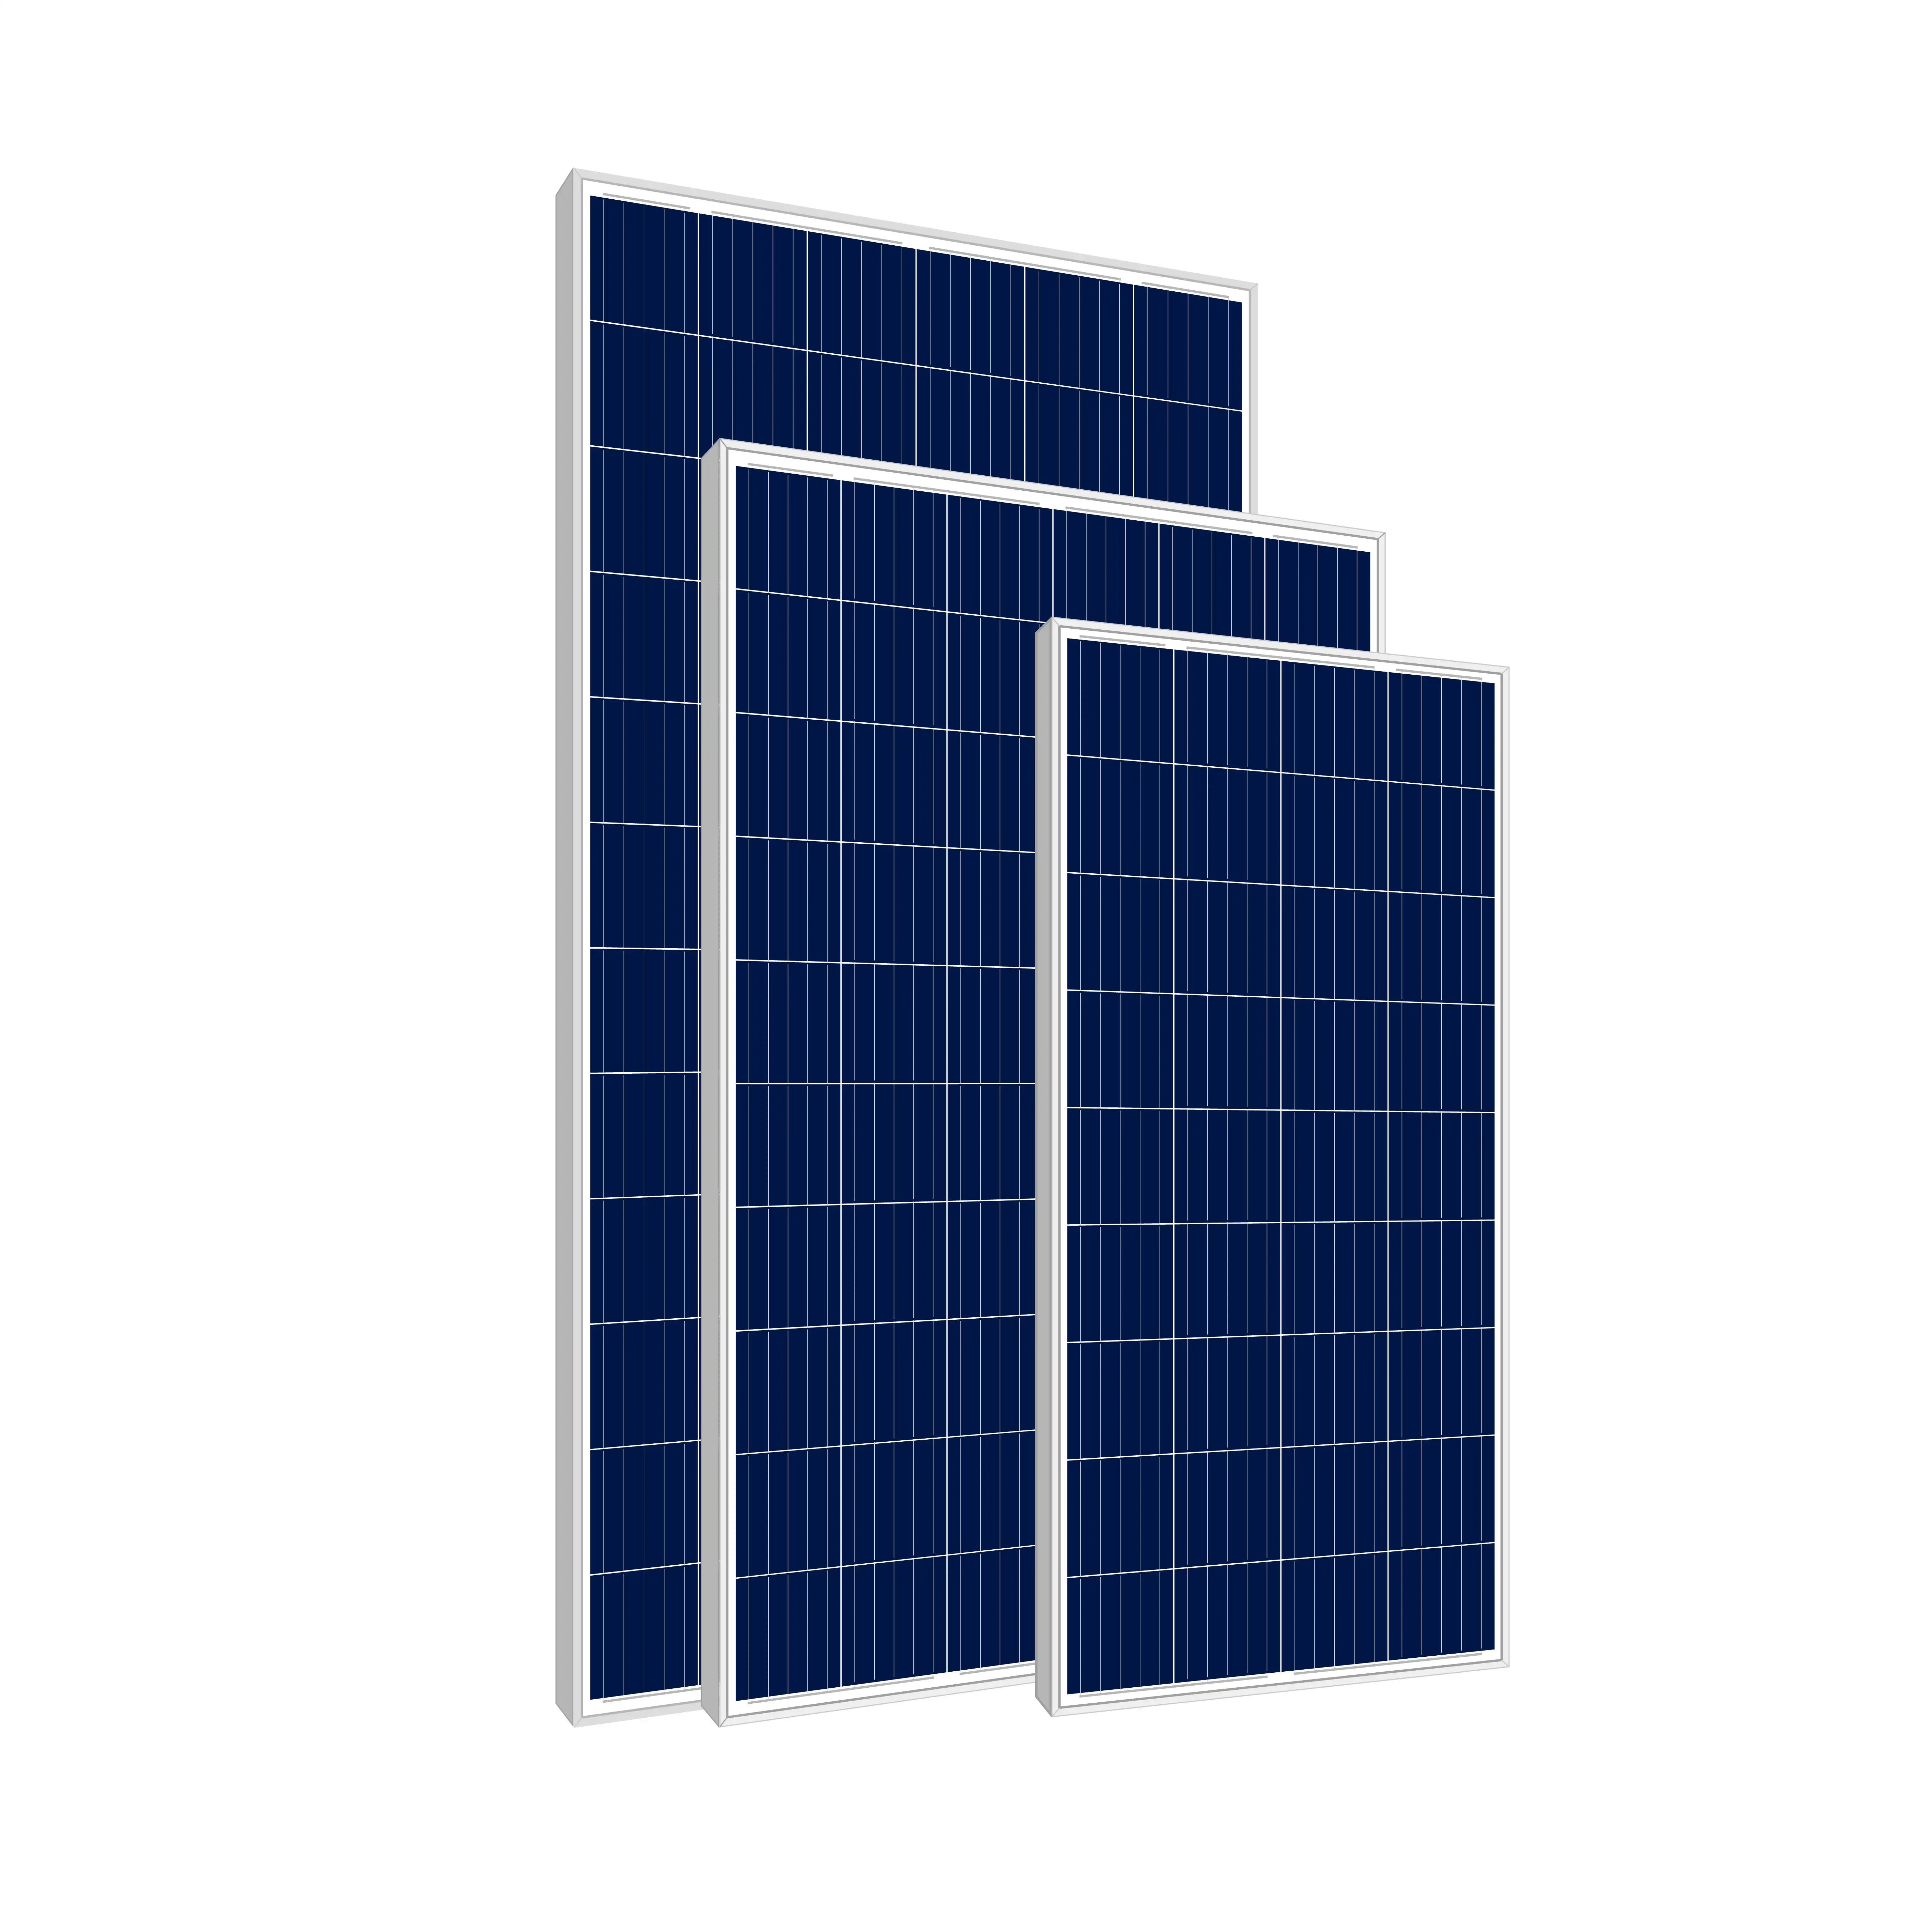 Điện áp không đổi và hiện tại 325 Wát đa tinh thể Tấm pin mặt trời Poly panel năng lượng mặt trời